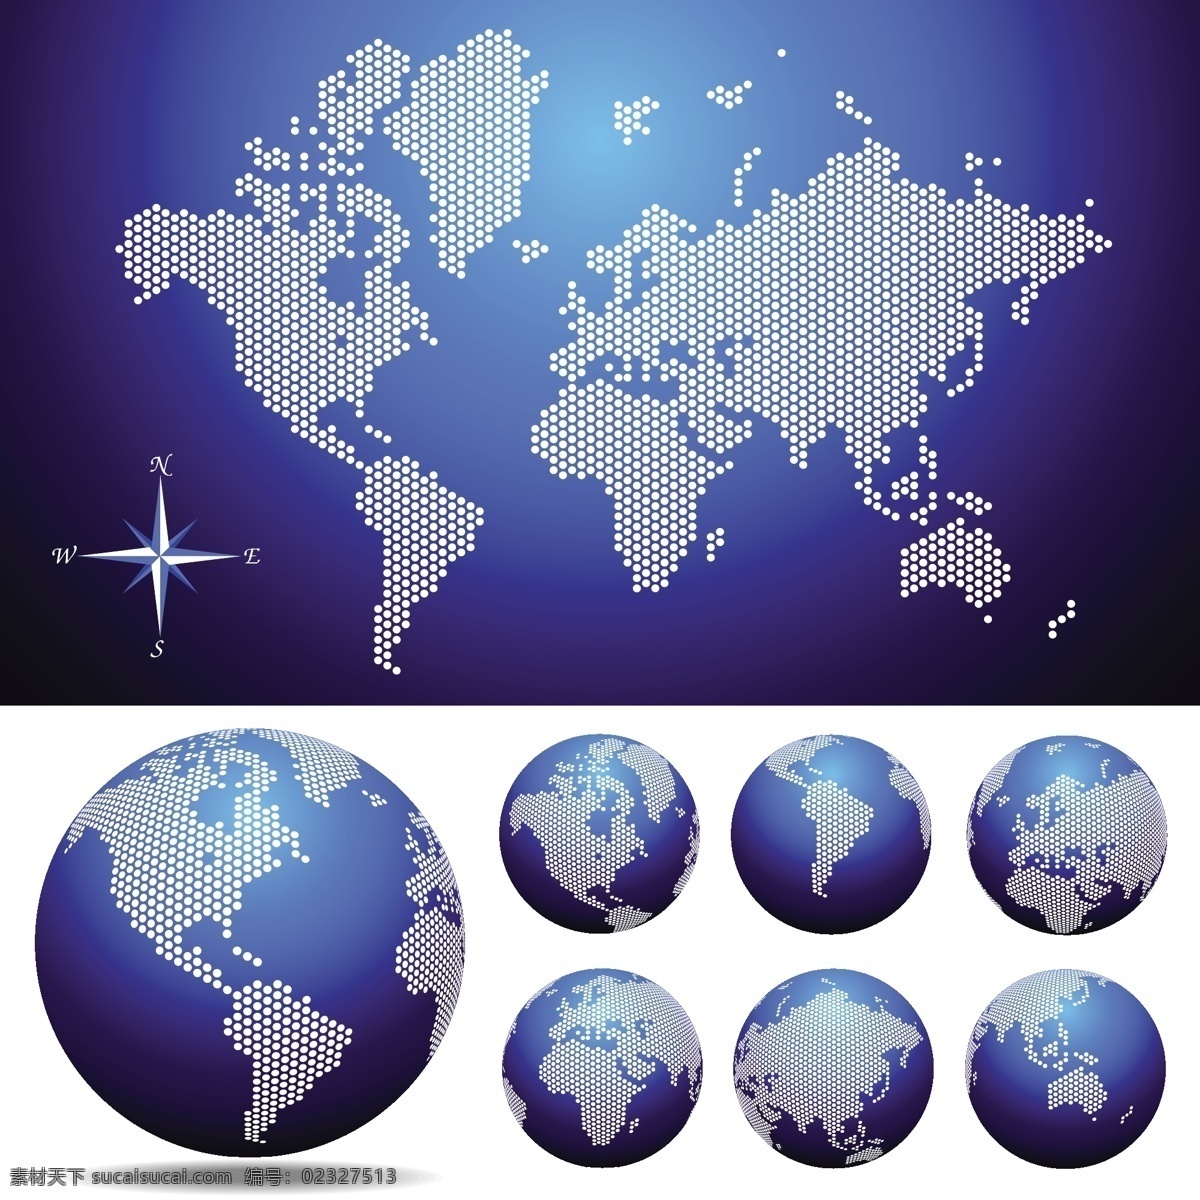 世界地图 地球 国家 矢量地图 世界 秩序 艺术矢量 矢量图 其他矢量图